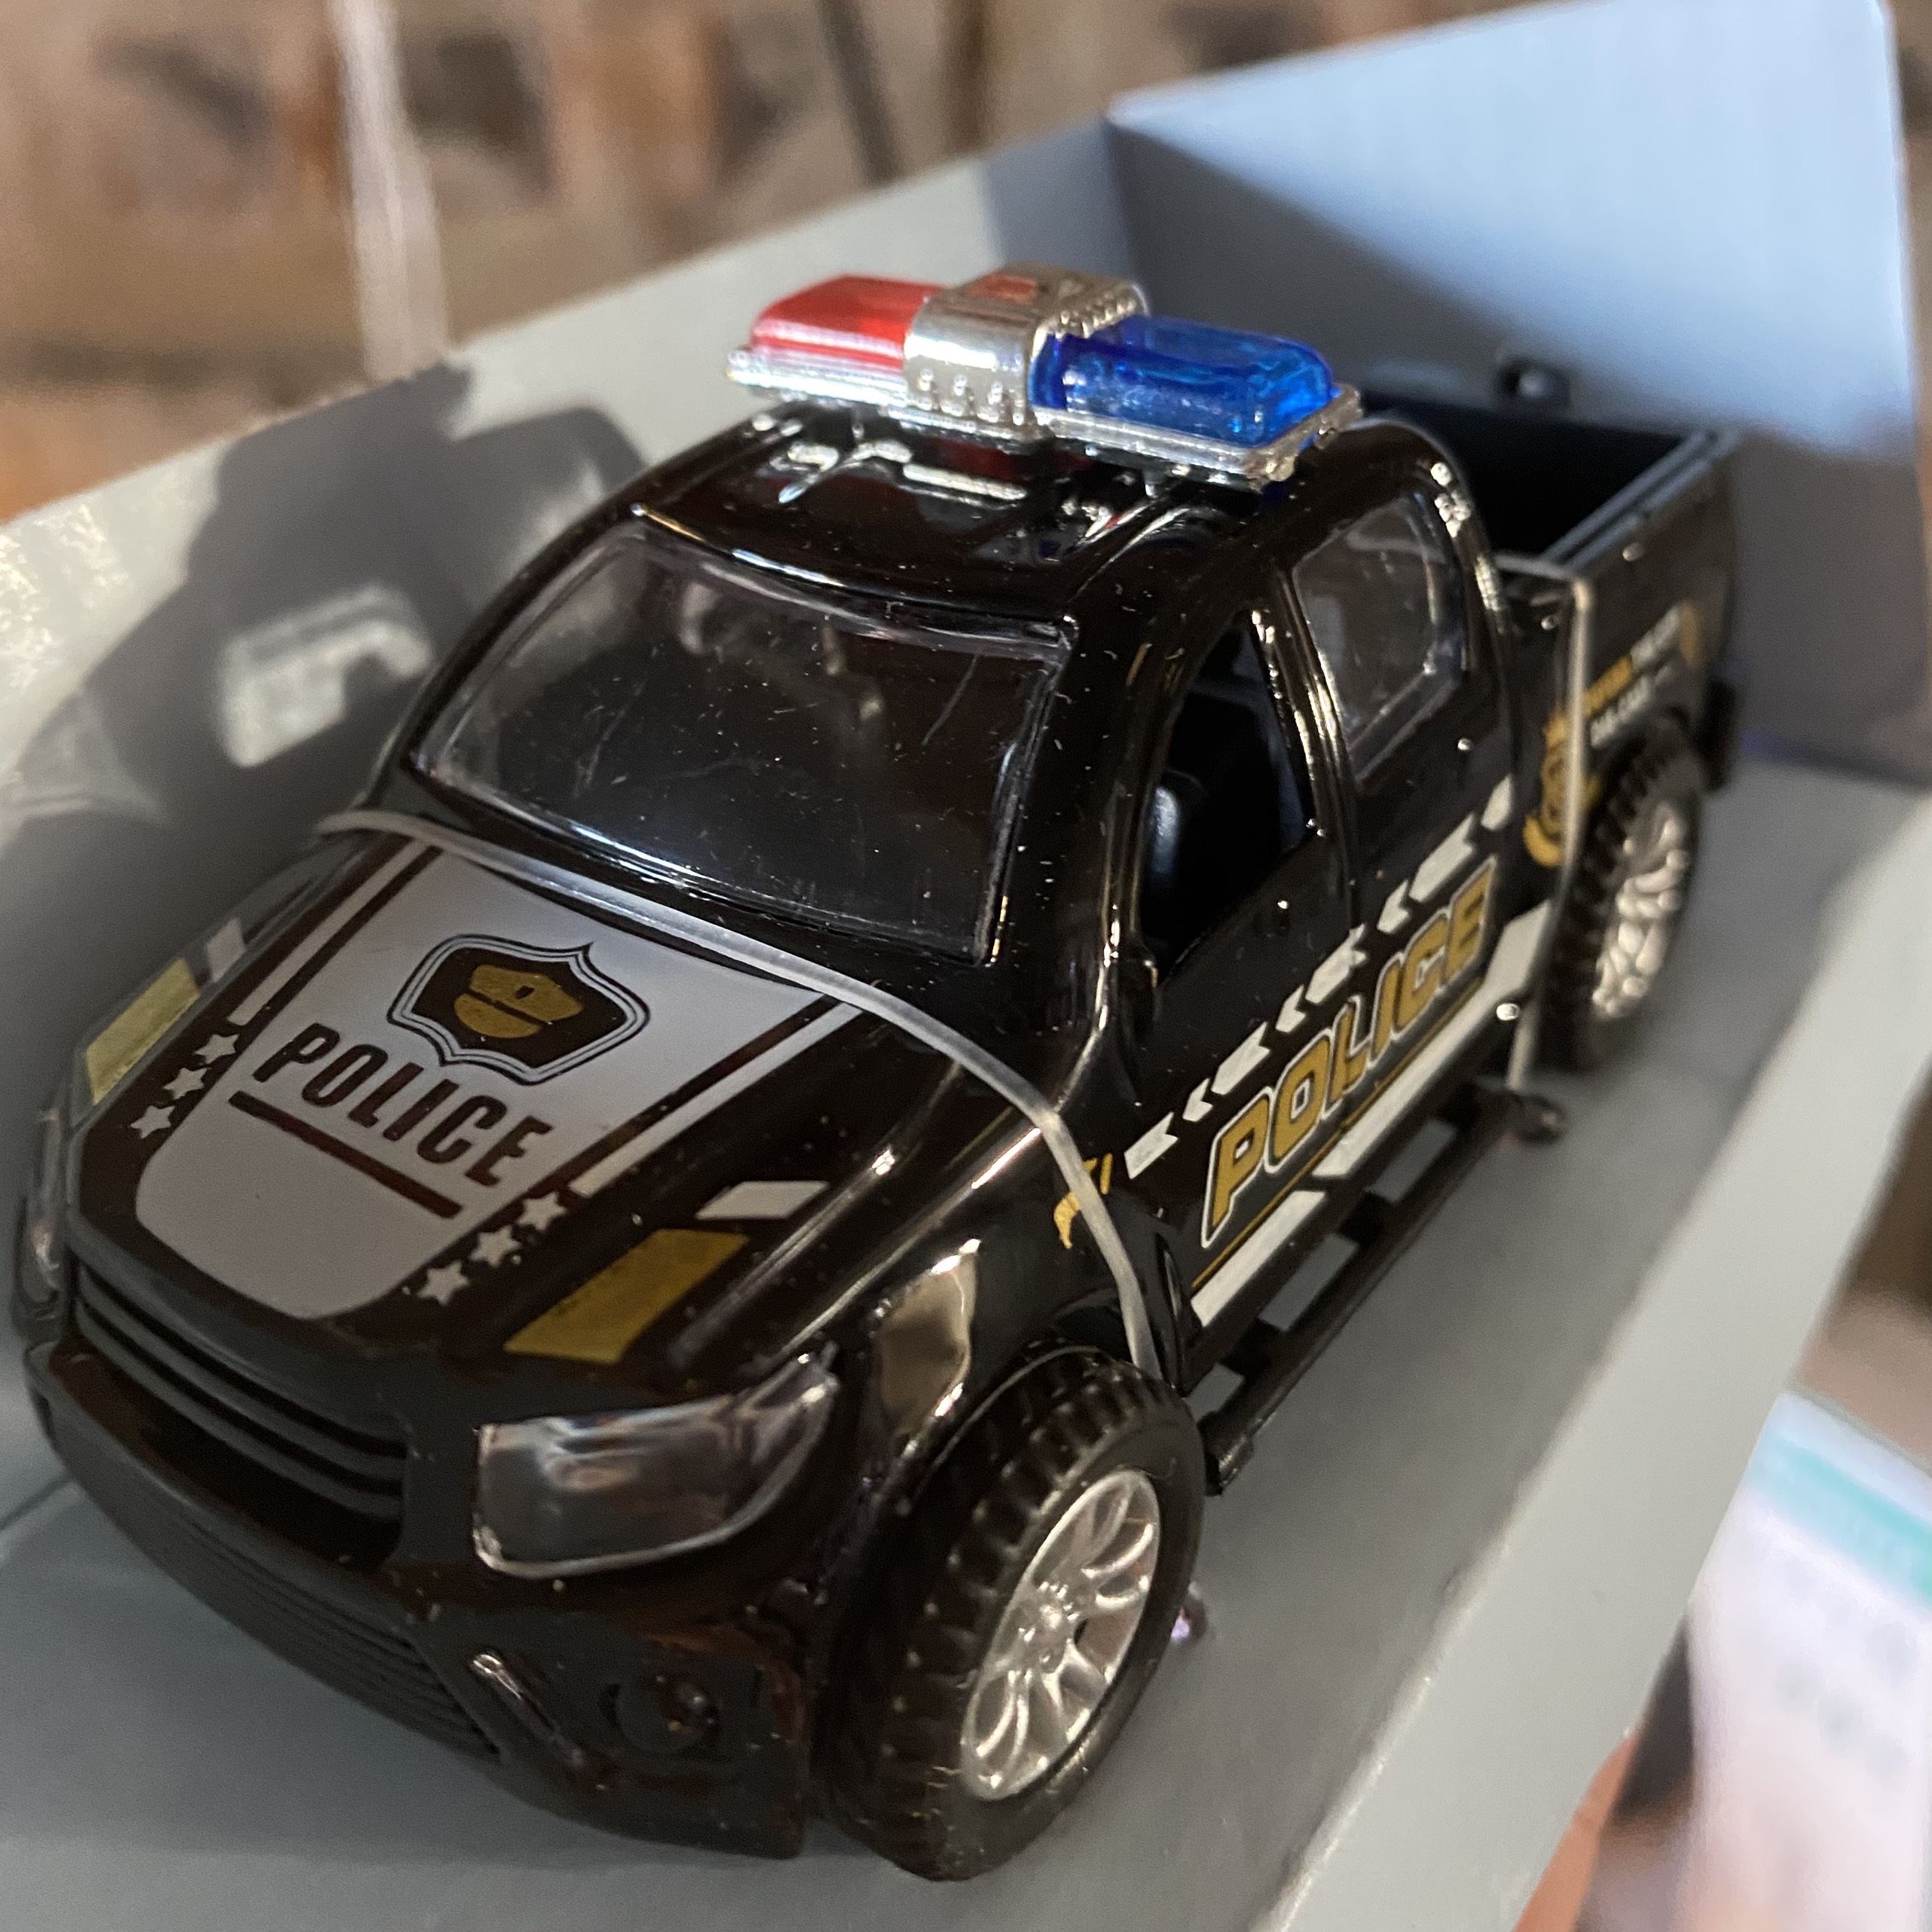 Đồ chơi mô hình xe ô tô cảnh sát KAVY - 01 bằng hợp kim chạy cót